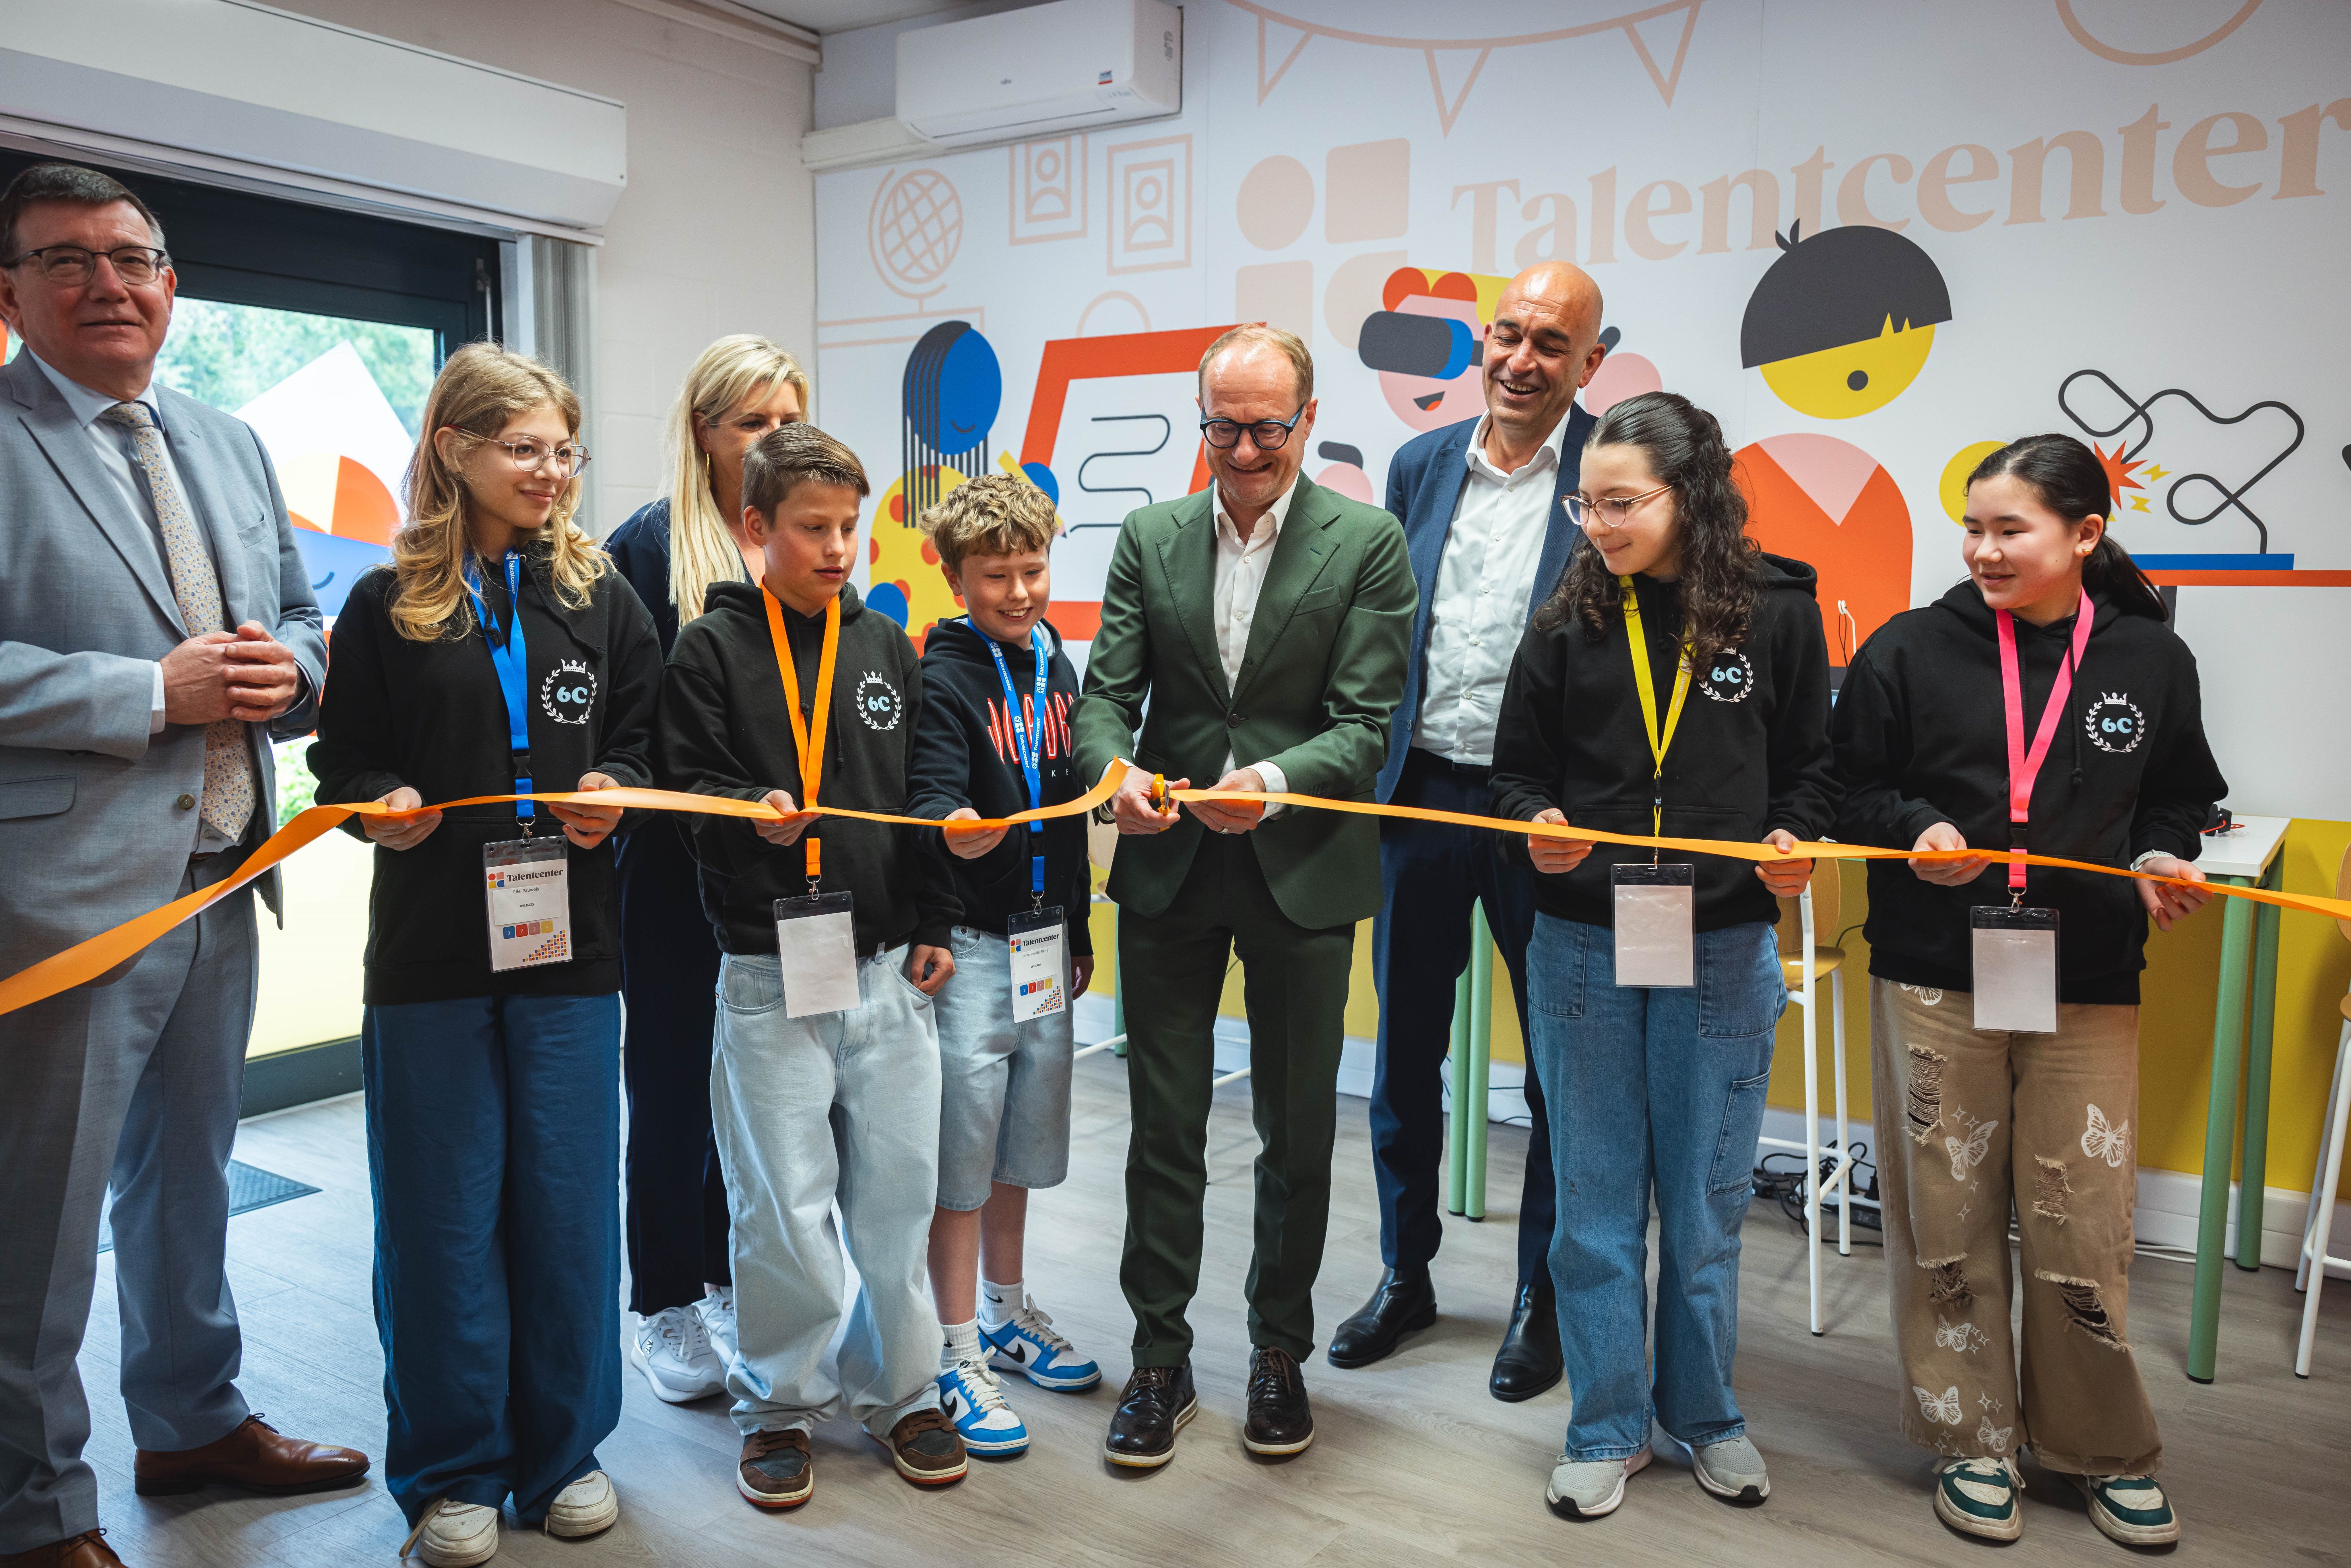 Minister van Onderwijs Ben Weyts opende het Talentcenter in Zellik in bijzijn van Kris Claes, gedelegeerd bestuurder Voka-KvK Vlaams-Brabant